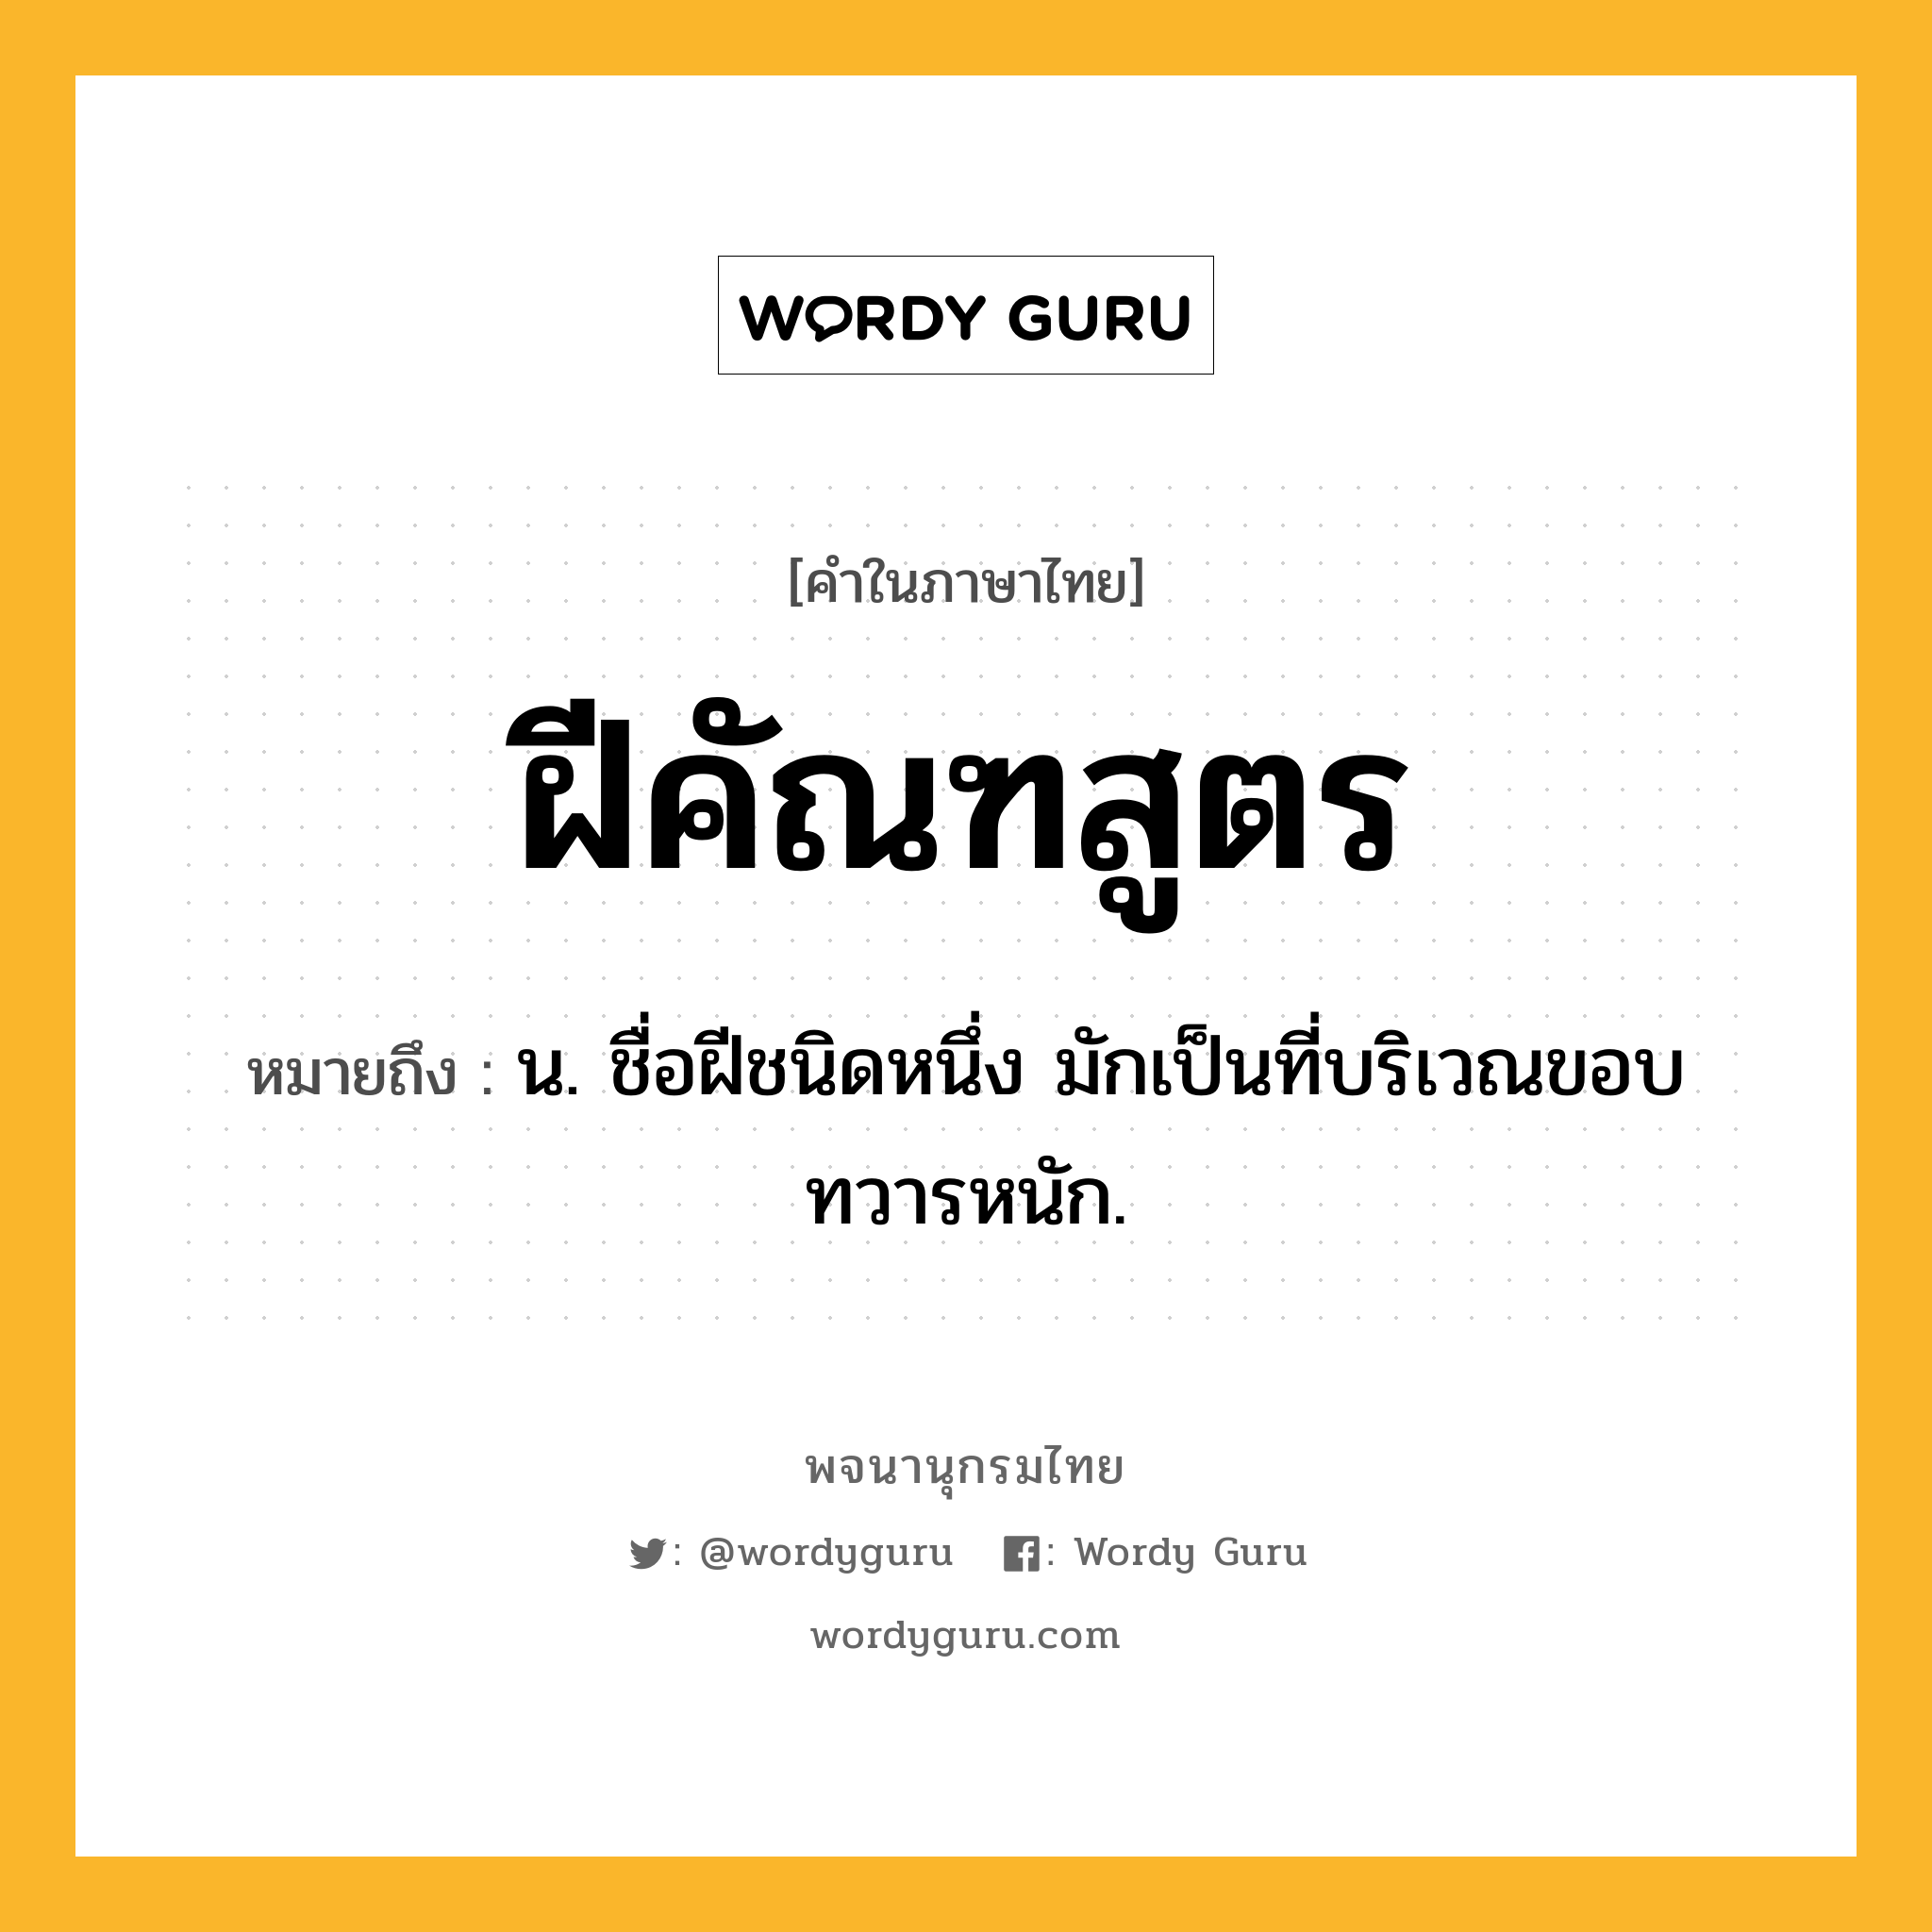 ฝีคัณฑสูตร ความหมาย หมายถึงอะไร?, คำในภาษาไทย ฝีคัณฑสูตร หมายถึง น. ชื่อฝีชนิดหนึ่ง มักเป็นที่บริเวณขอบทวารหนัก.